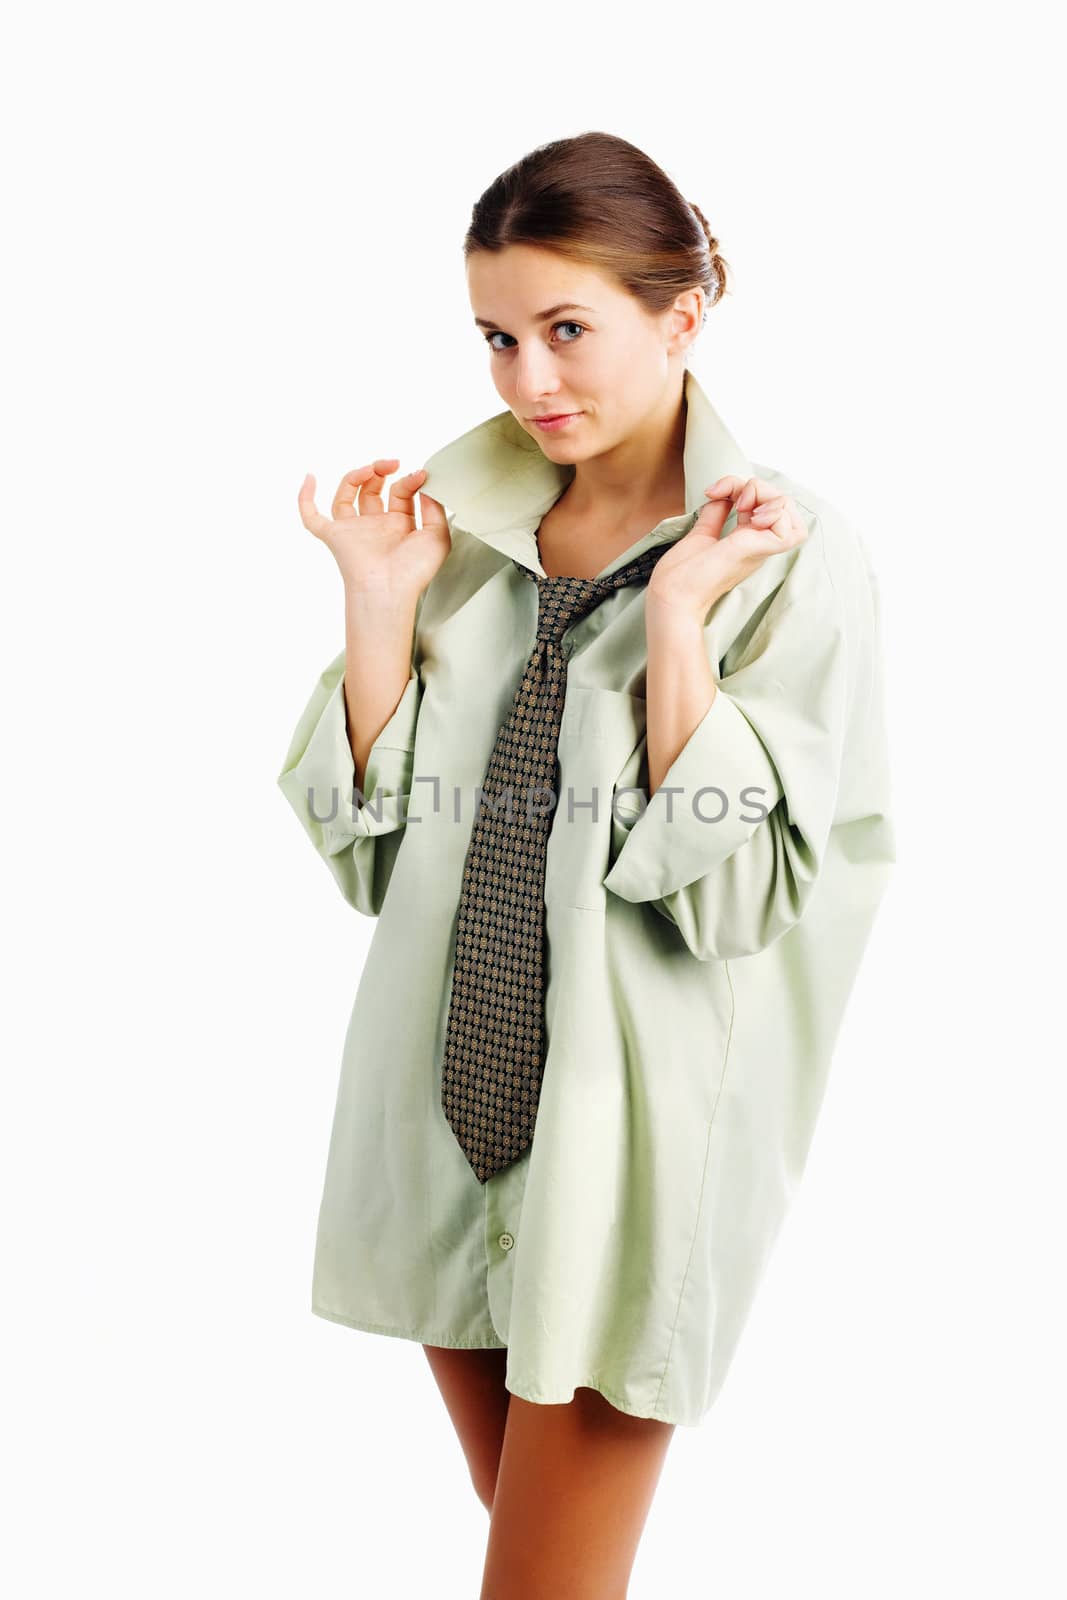 An image of a beautiful girl in green shirt